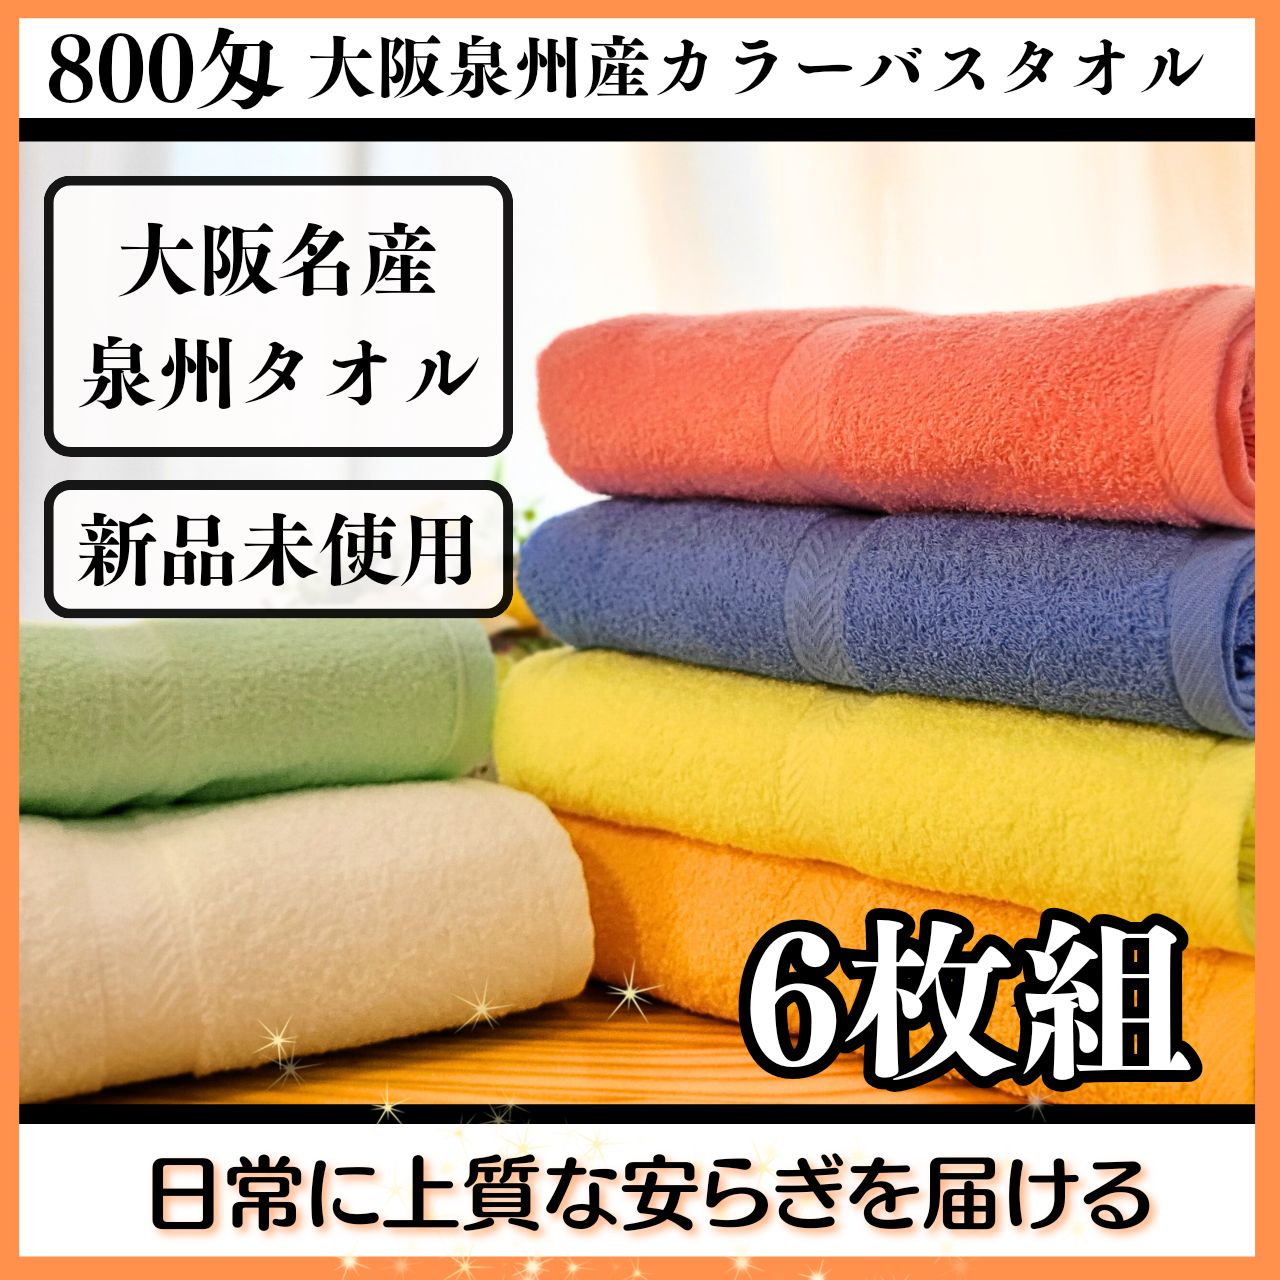 泉州タオル 800匁オレンジバスタオルセット6枚組 タオル新品 まとめ売りタオル・バス用品